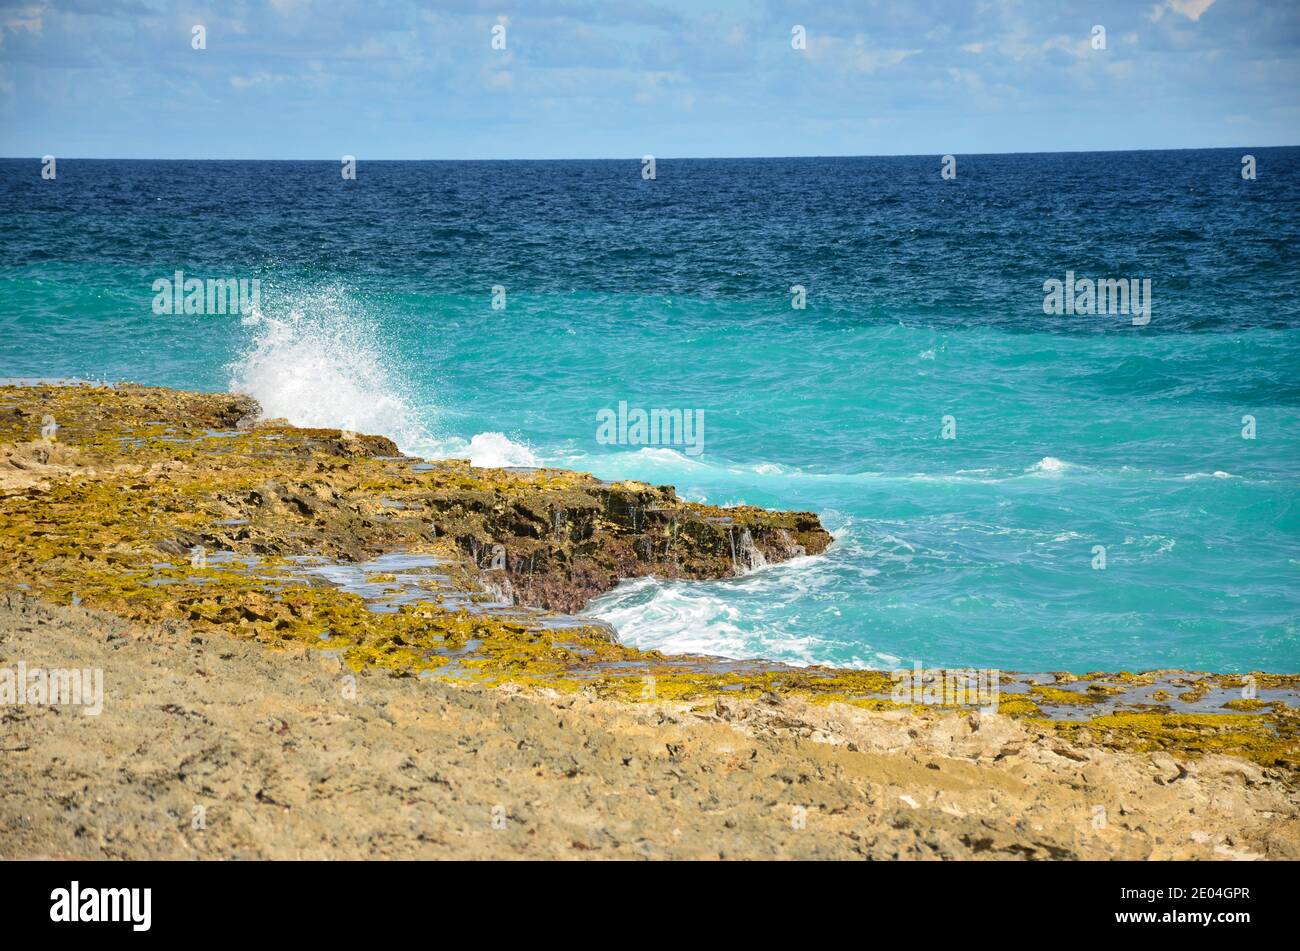 belle plage sur l'île des caraïbes de bonaire, bon site de plongée avec tuba et plongée sur l'île. profitez de la détente dans le sable au bord de la mer Banque D'Images